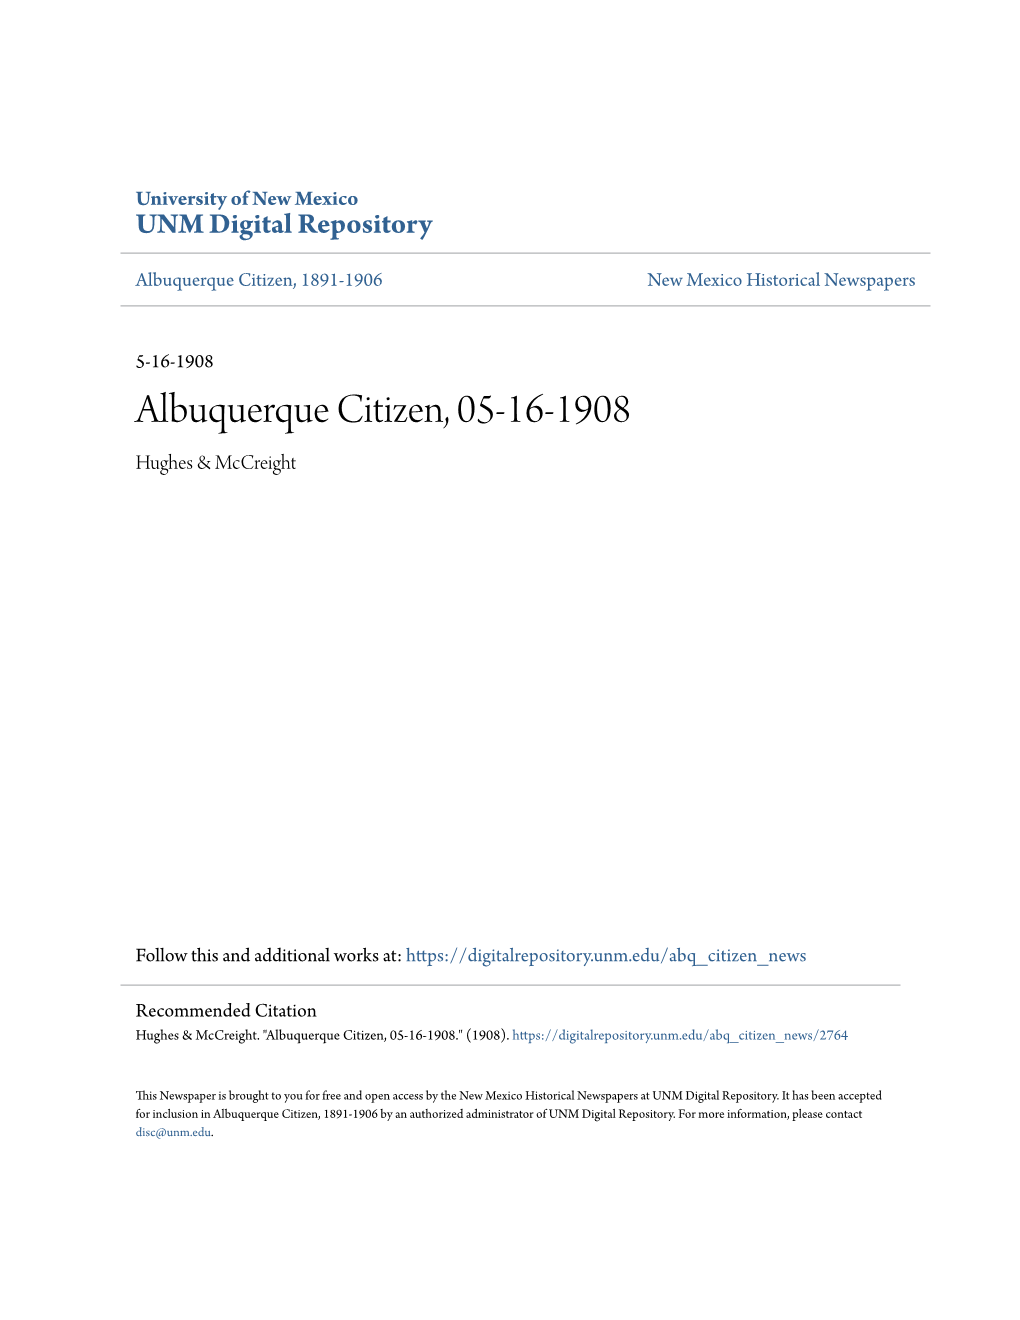 Albuquerque Citizen, 05-16-1908 Hughes & Mccreight